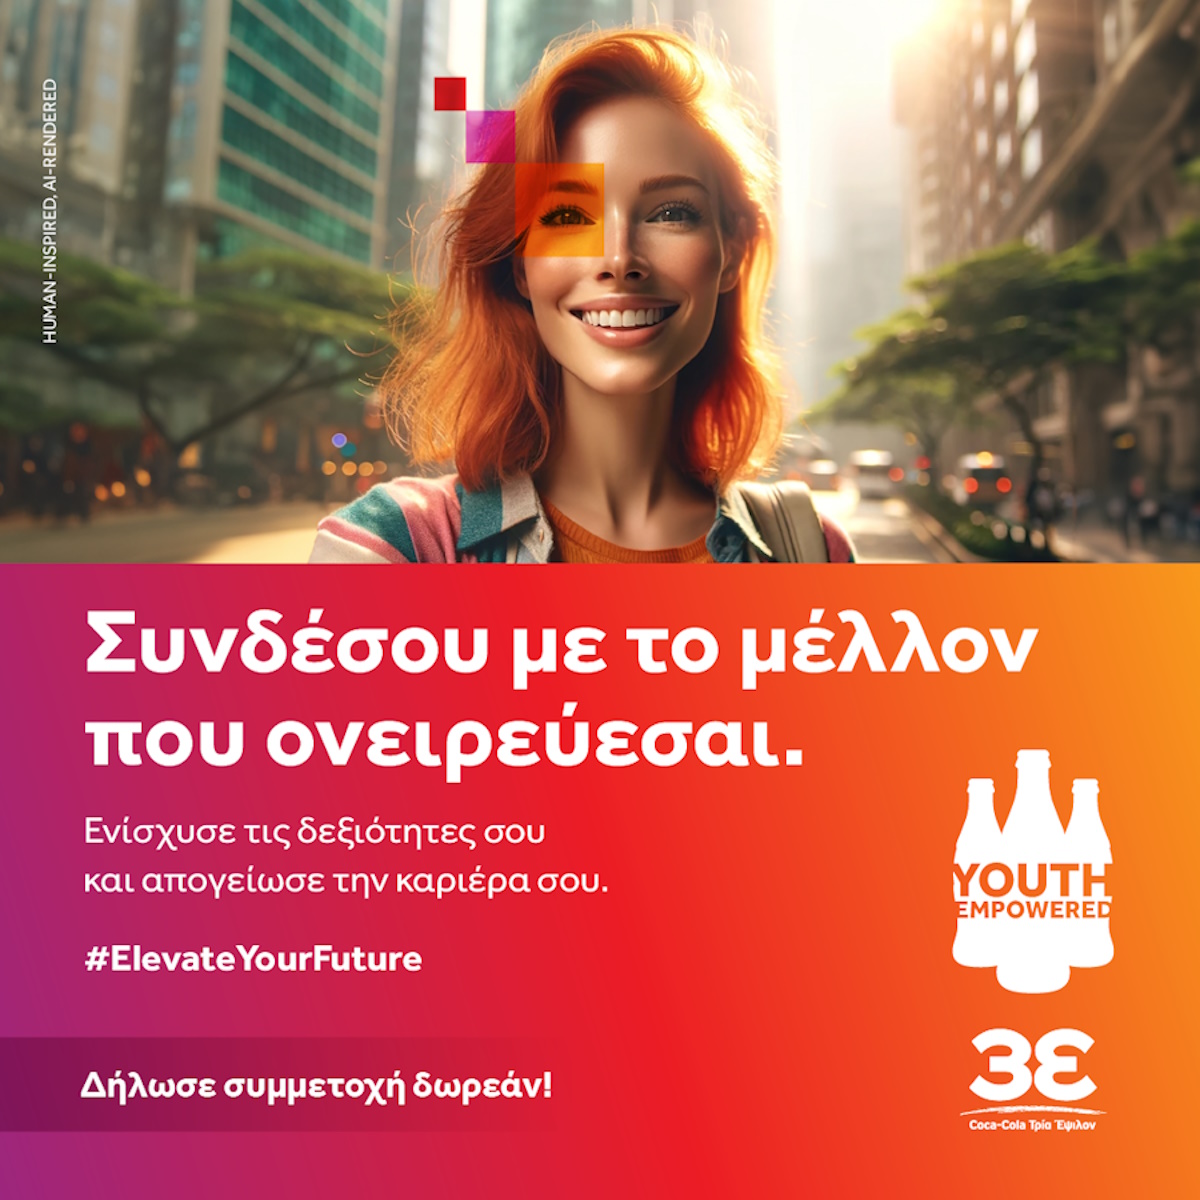 Το Youth Empowered της Coca-Cola Τρία Έψιλον επιστρέφει ανανεωμένο με νέο κύκλο επενδύσεων